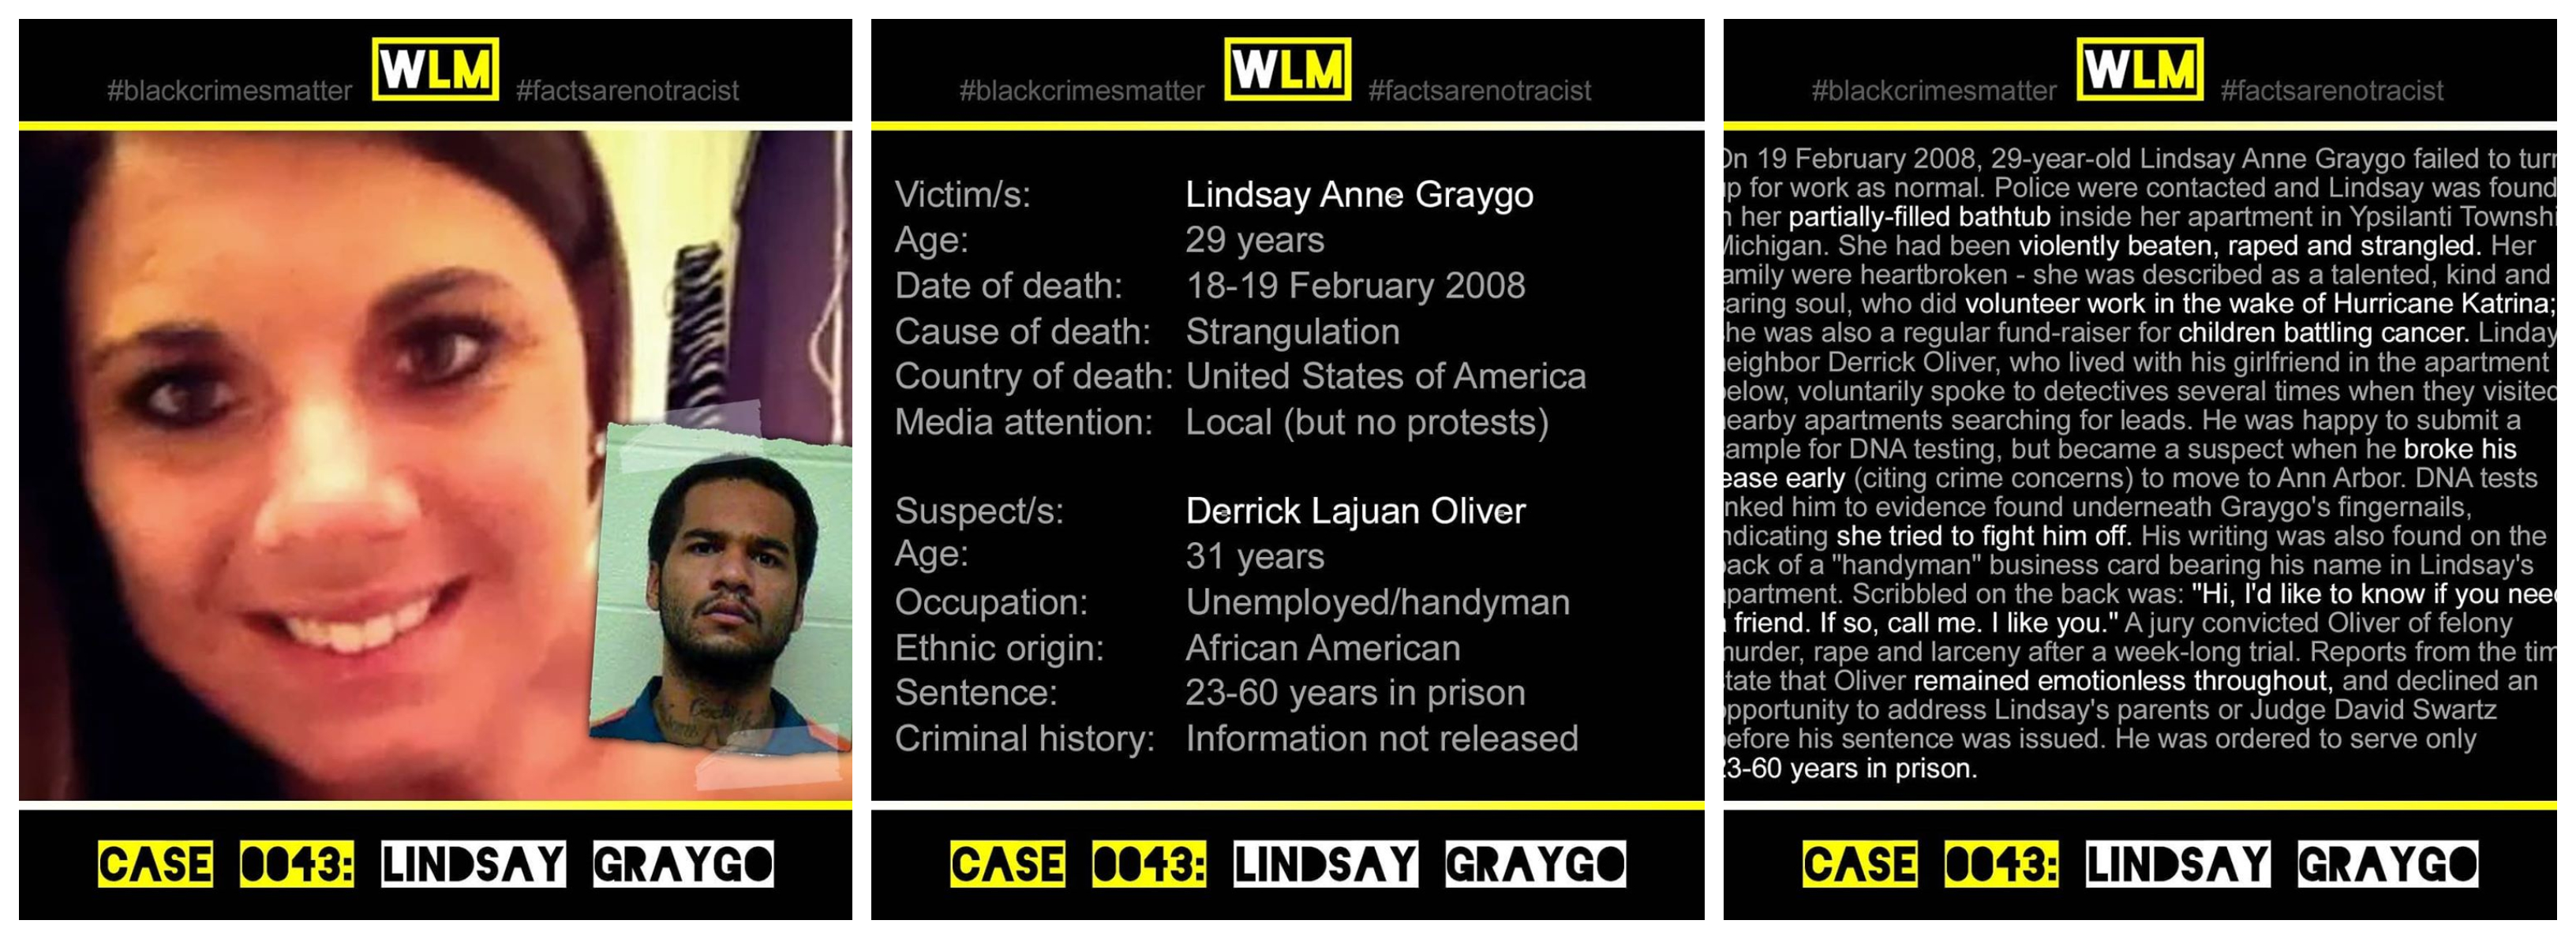 case-043-lindsay-graygo